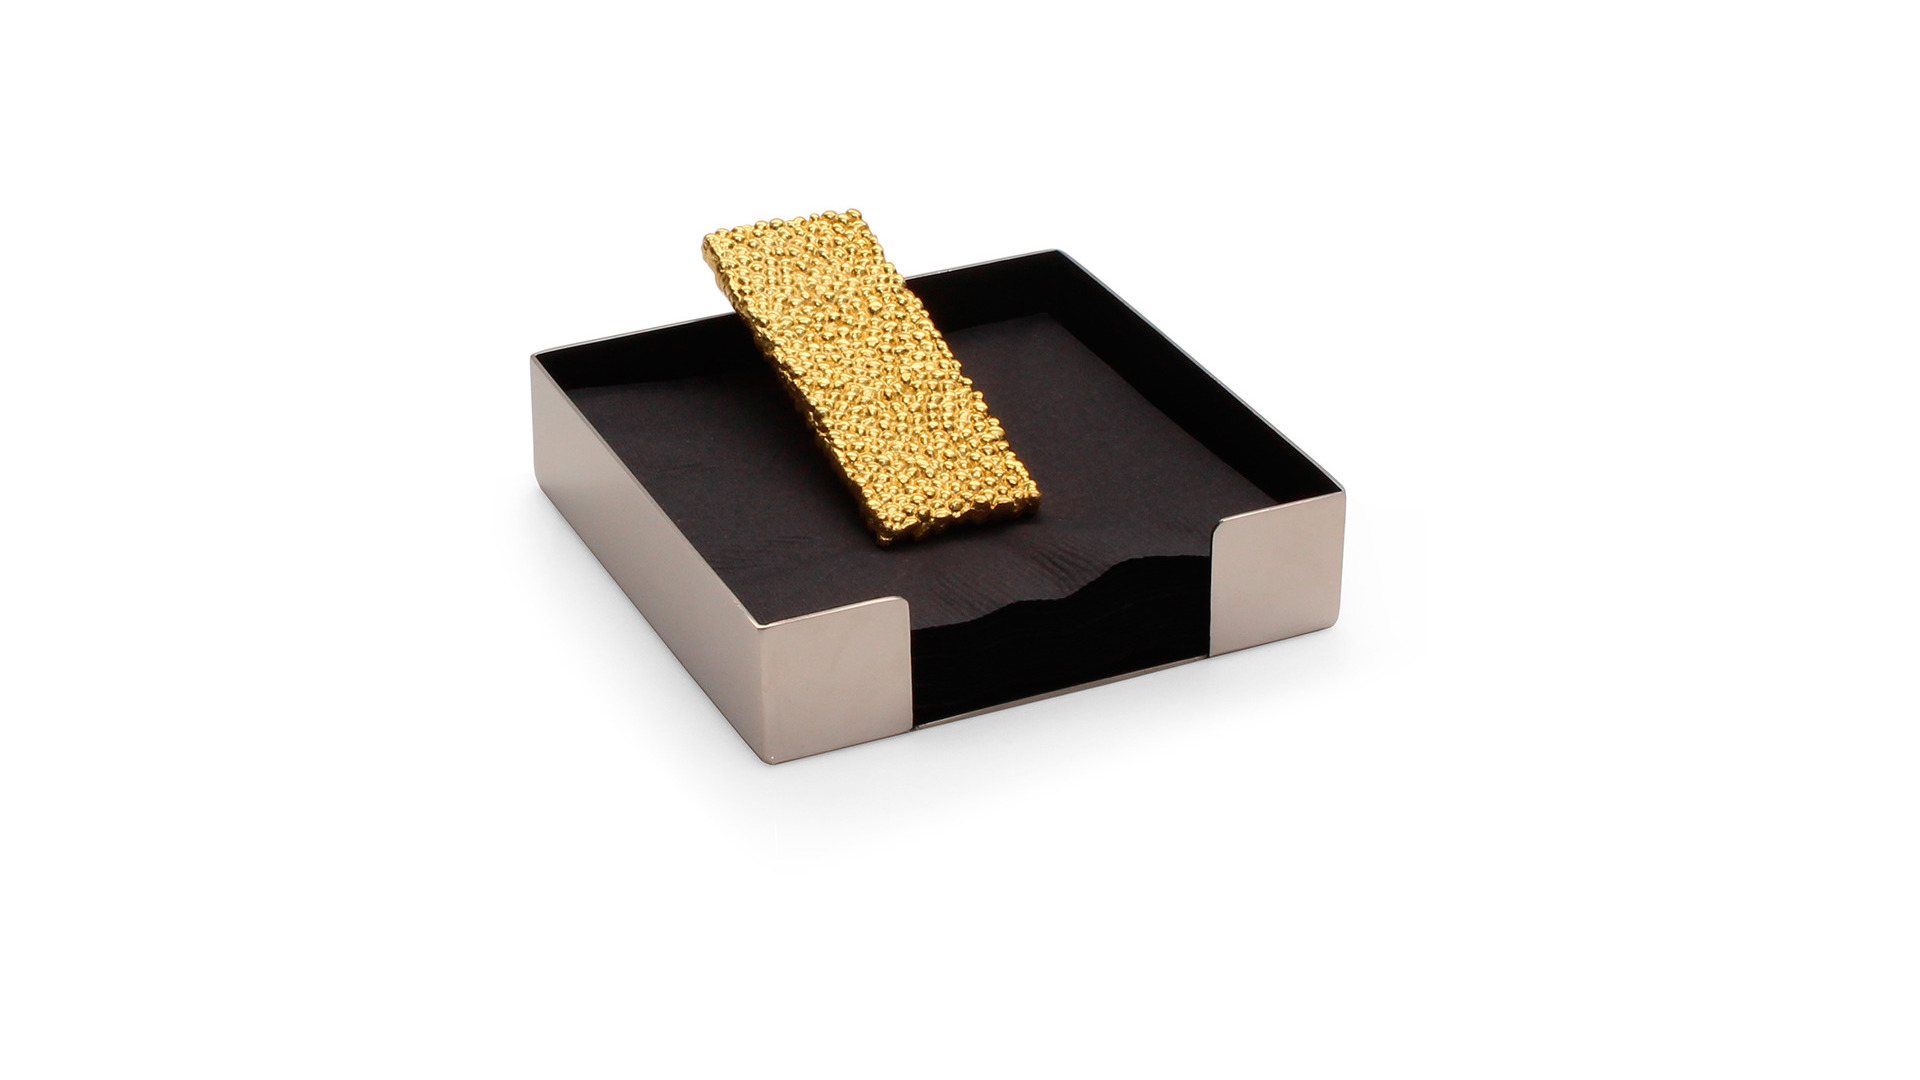 Подставка для салфеток Michael Aram Золотые жемчужины 13 см